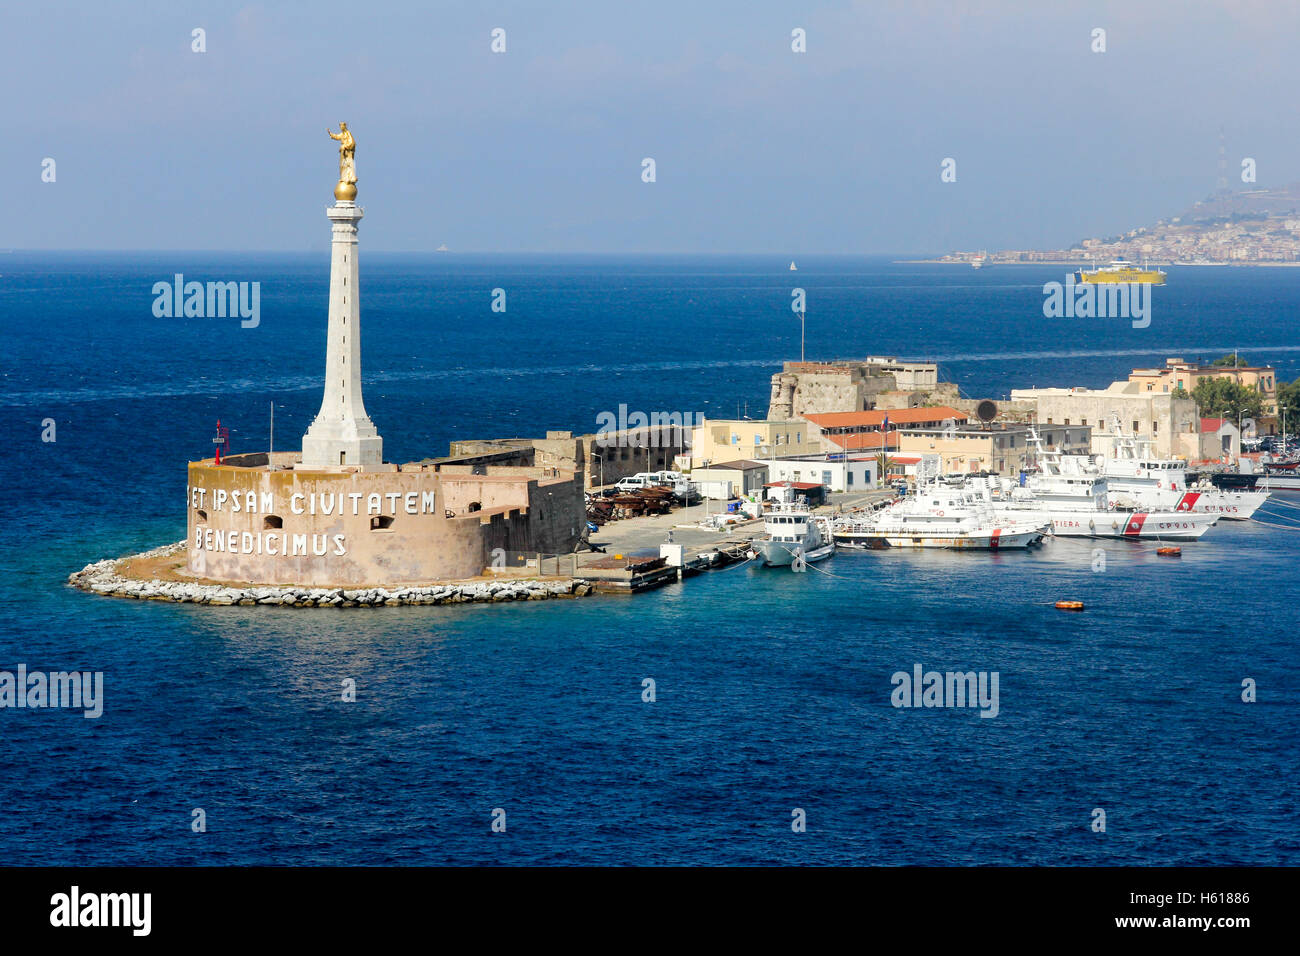 Statua della Madonna Dorata all'ingresso del porto di Messina, Sicilia, Italia Foto Stock